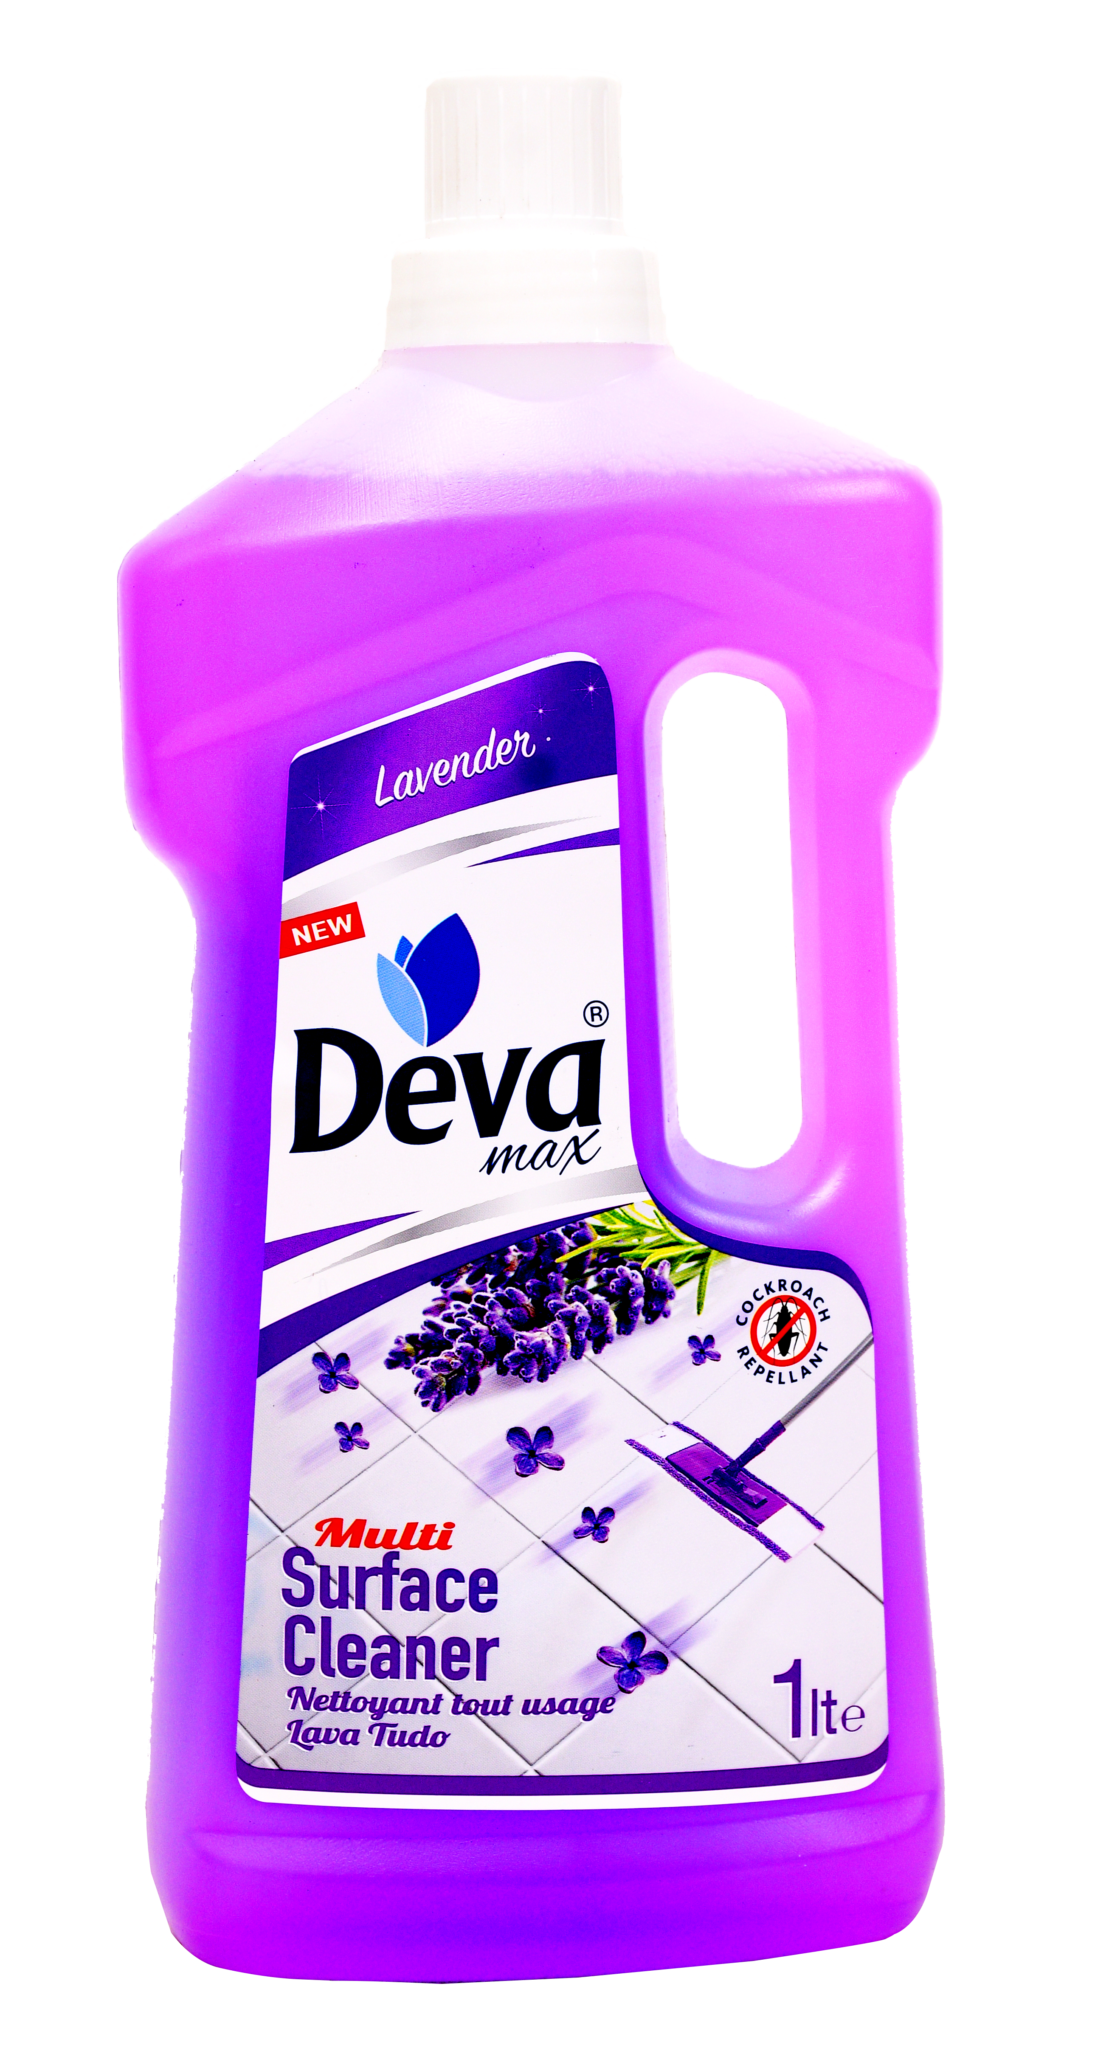 1 litre bottle of deva multi surface cleaner lavender